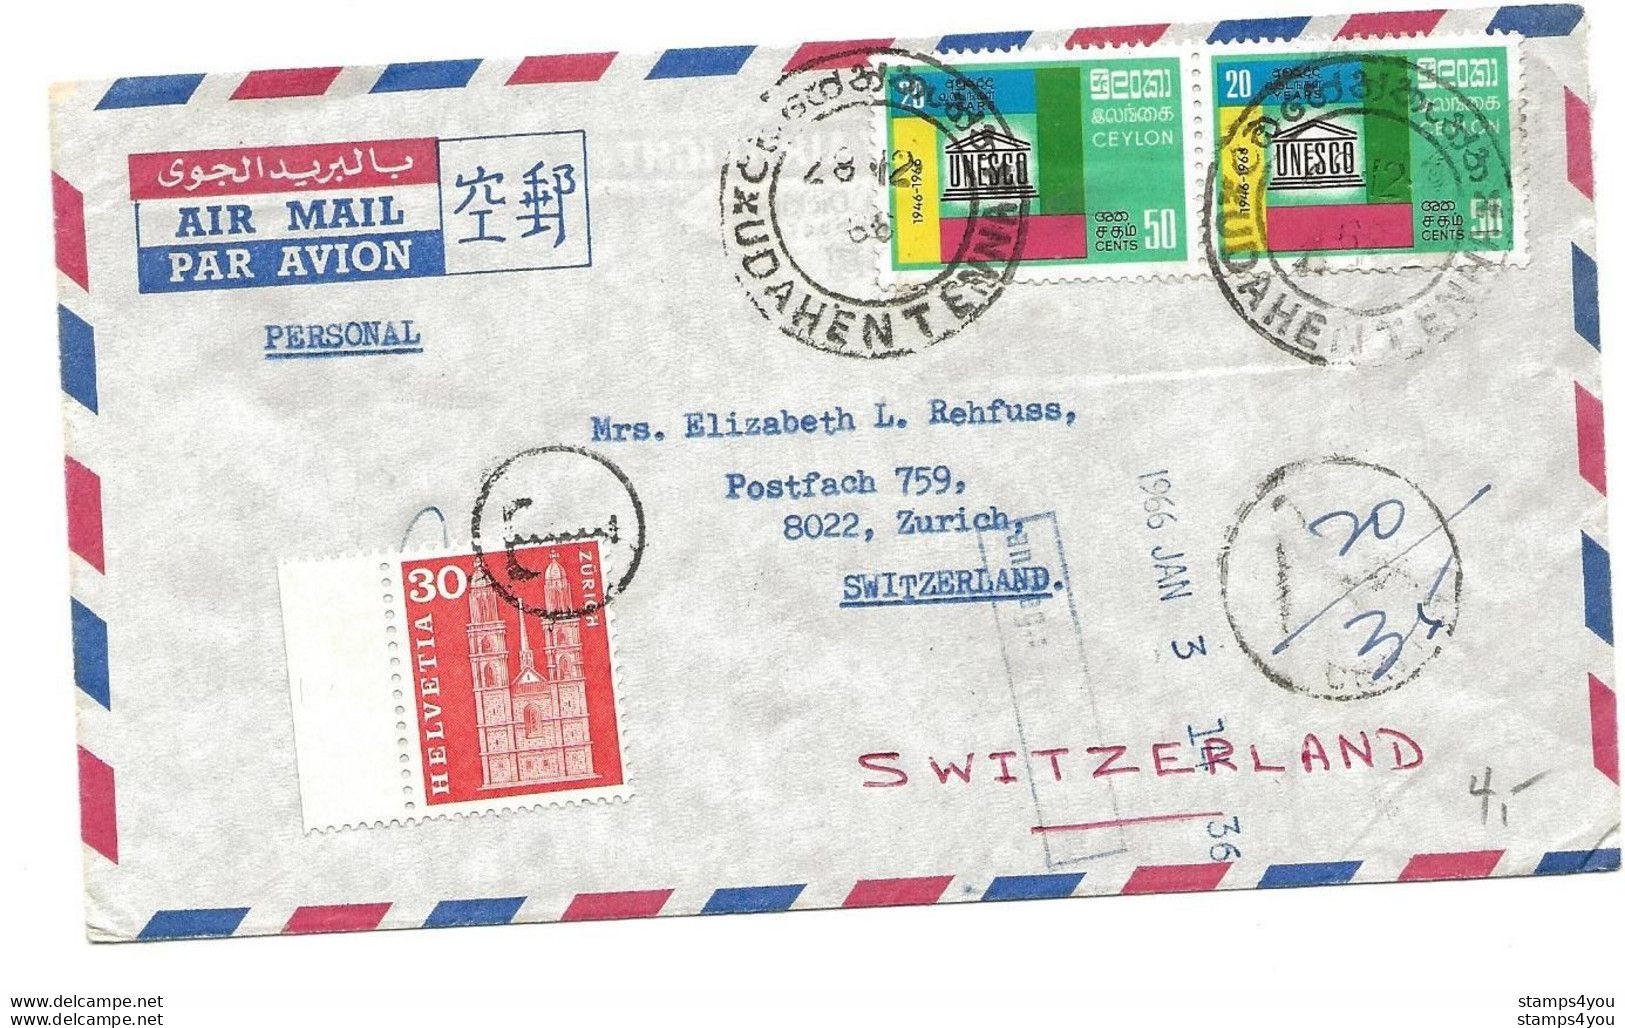 104 - 69 - Enveloppe Envoyée De Ceylon En Suisse - Timbre Suisse Avec Cachet "T" Taxe 1966 - Postage Due